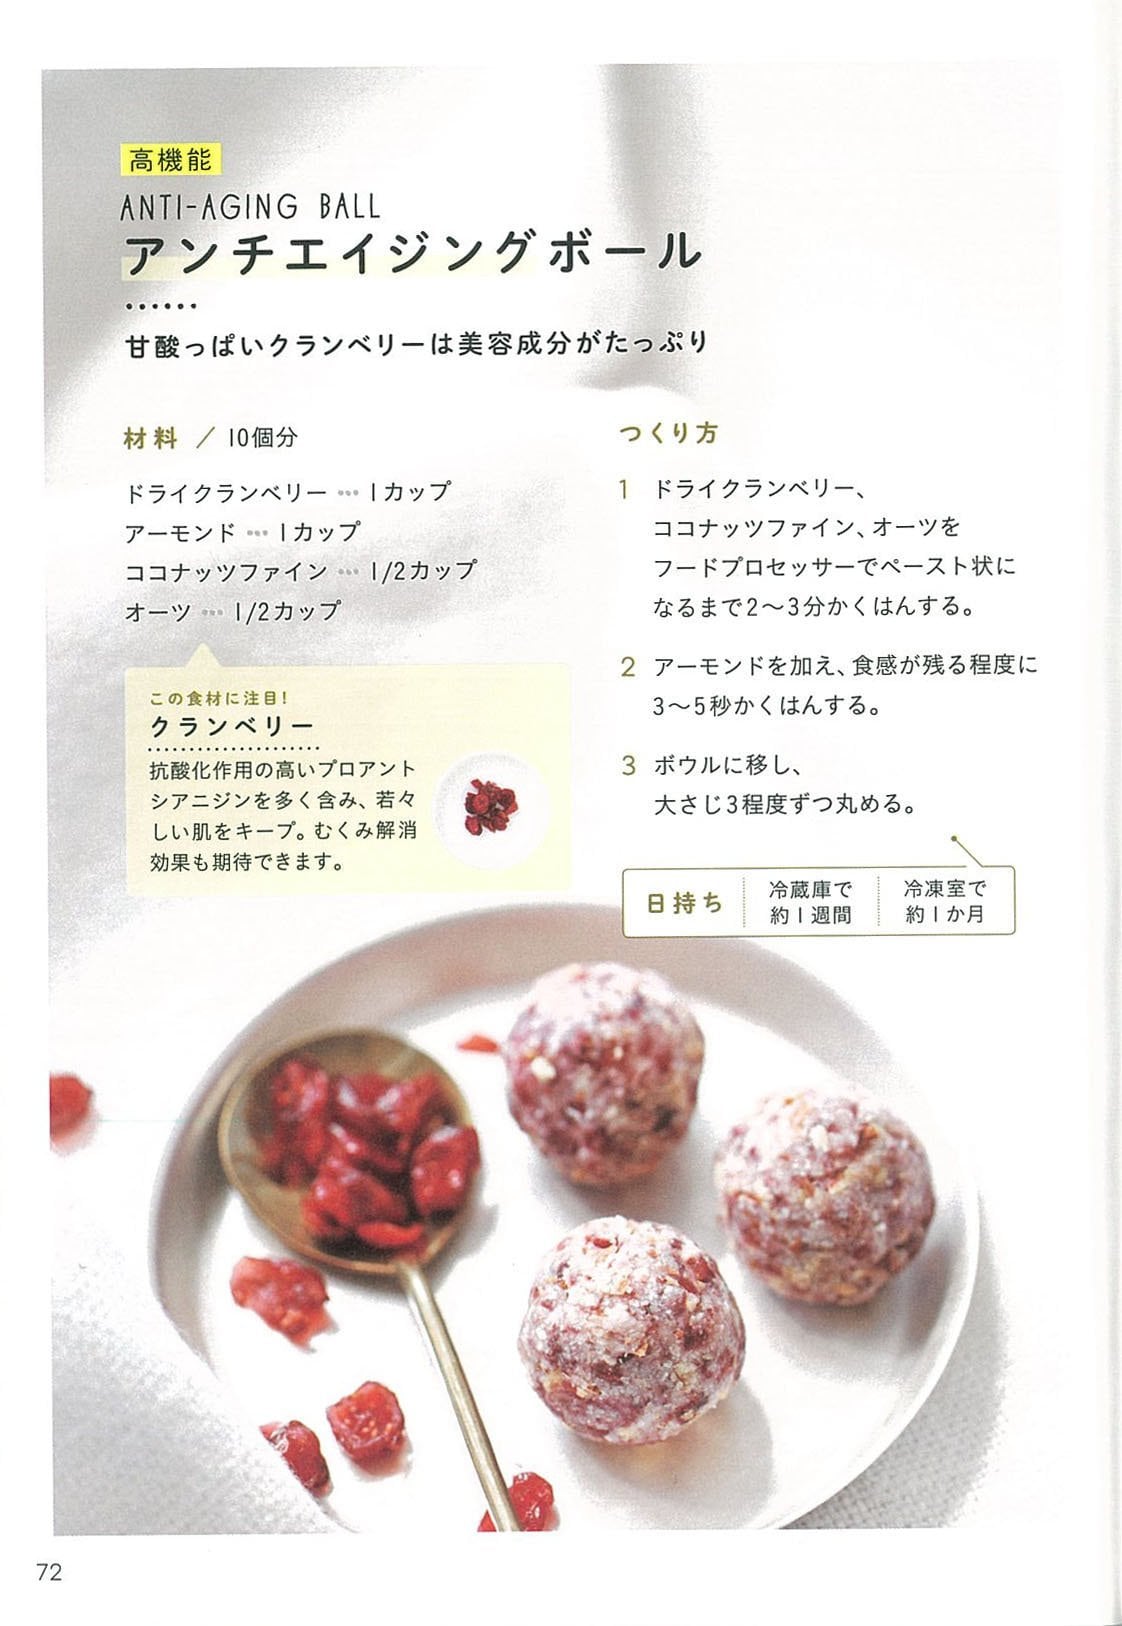 レシピ本 ブリスボール グルテンフリー 砂糖なし 添加物なしのヘルシーフードをはじめよう 日本初の ブリスボール 専門店food Jewelry フードジュエリーのオンラインショップ